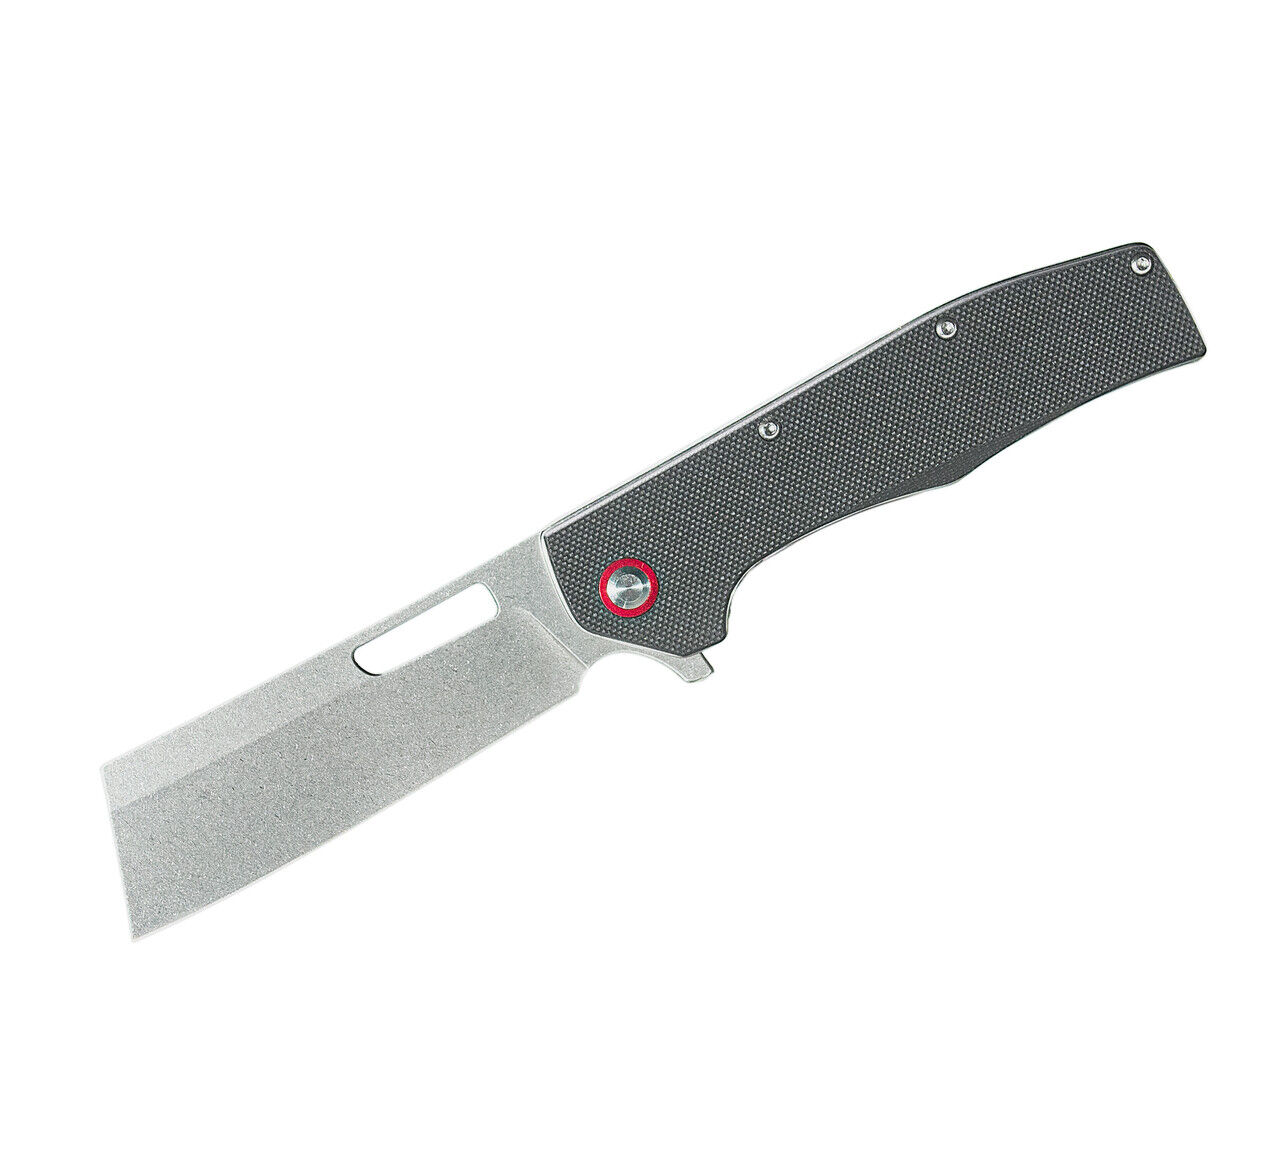 ABKT Tac Cleaver Ball Folding Knife 3.5” D2 Tool Steel Blade Black G10 Handle